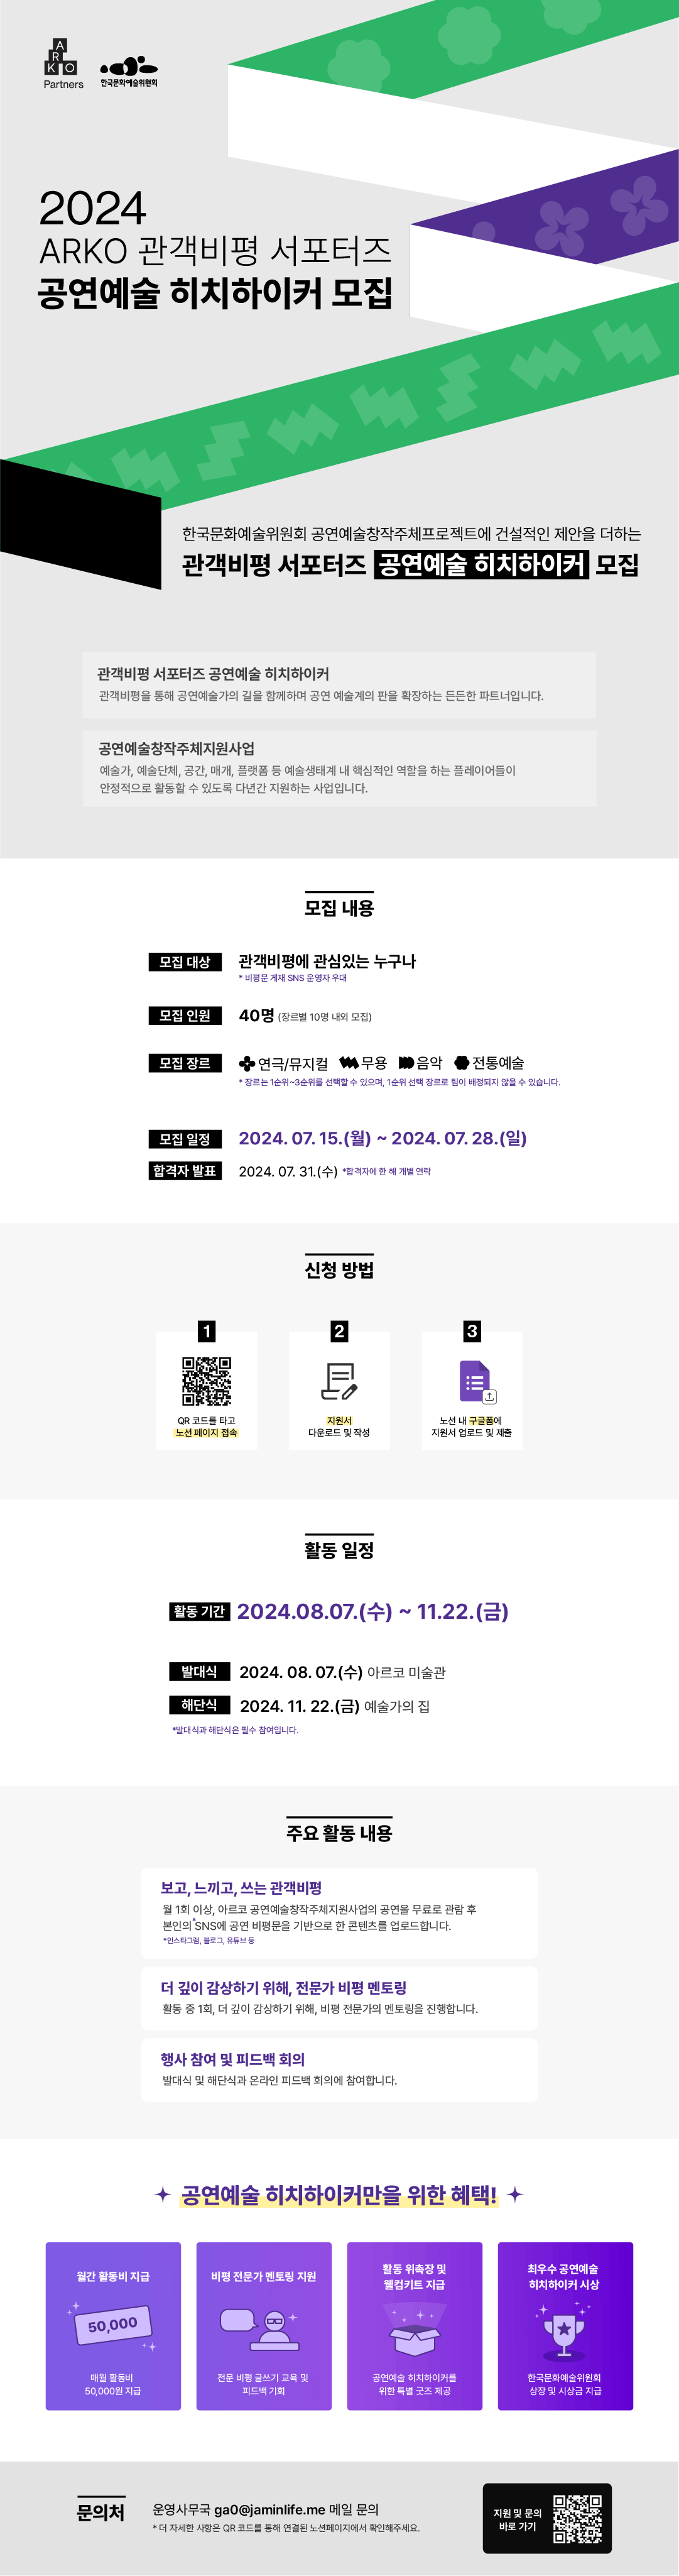 2024 ARKO 관객비평 서포터즈 공연예술 히치하이커 모집(자세한 내용 아래 참조)